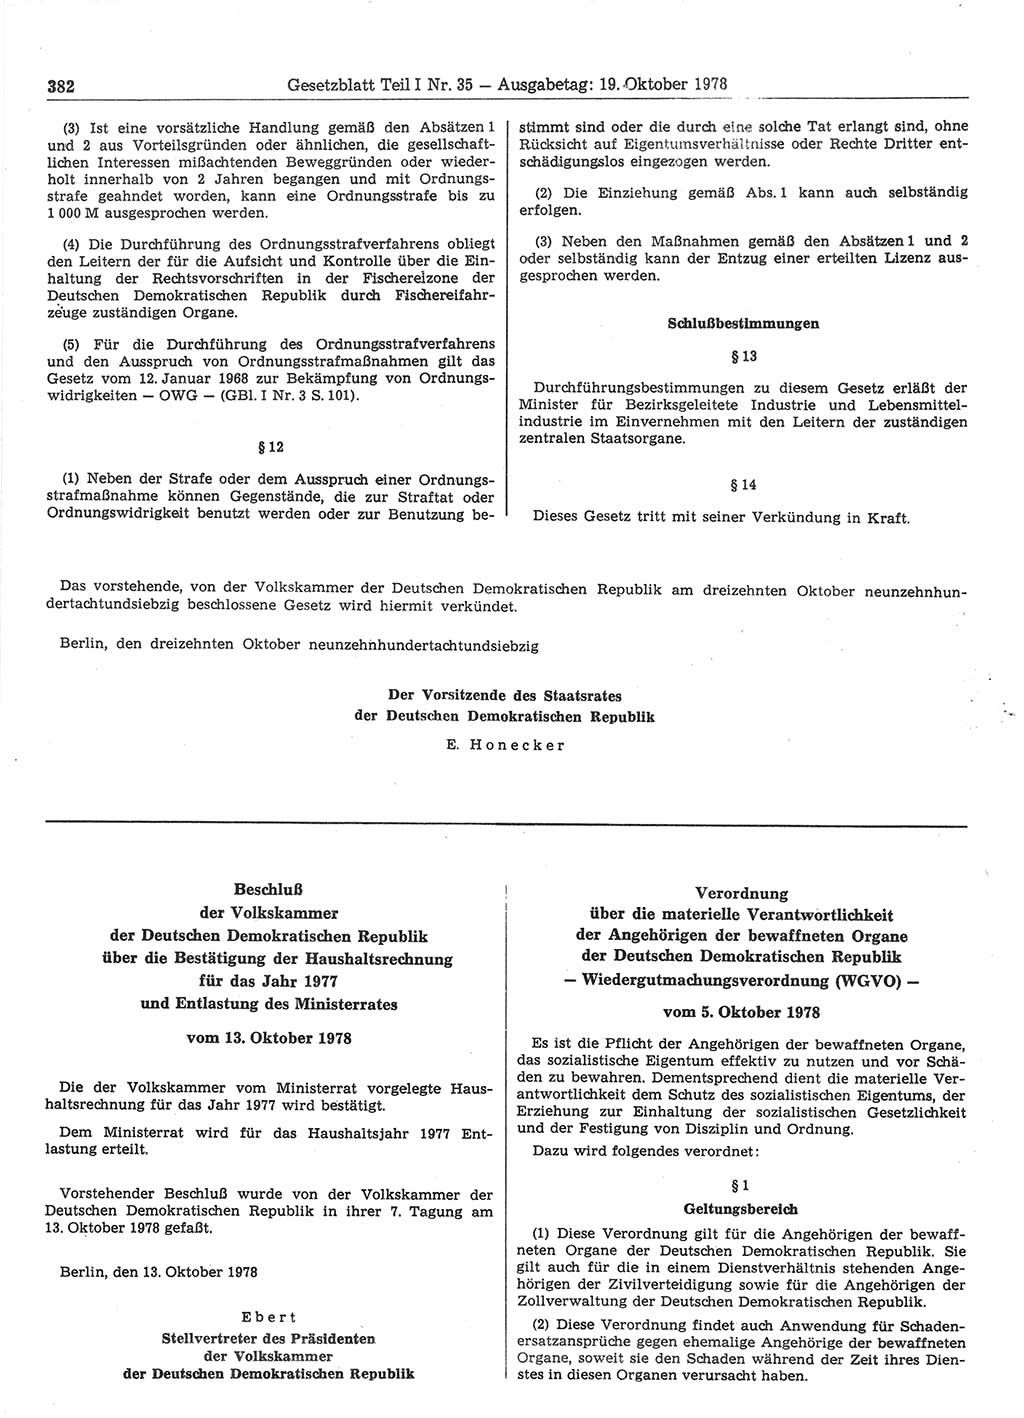 Gesetzblatt (GBl.) der Deutschen Demokratischen Republik (DDR) Teil Ⅰ 1978, Seite 382 (GBl. DDR Ⅰ 1978, S. 382)